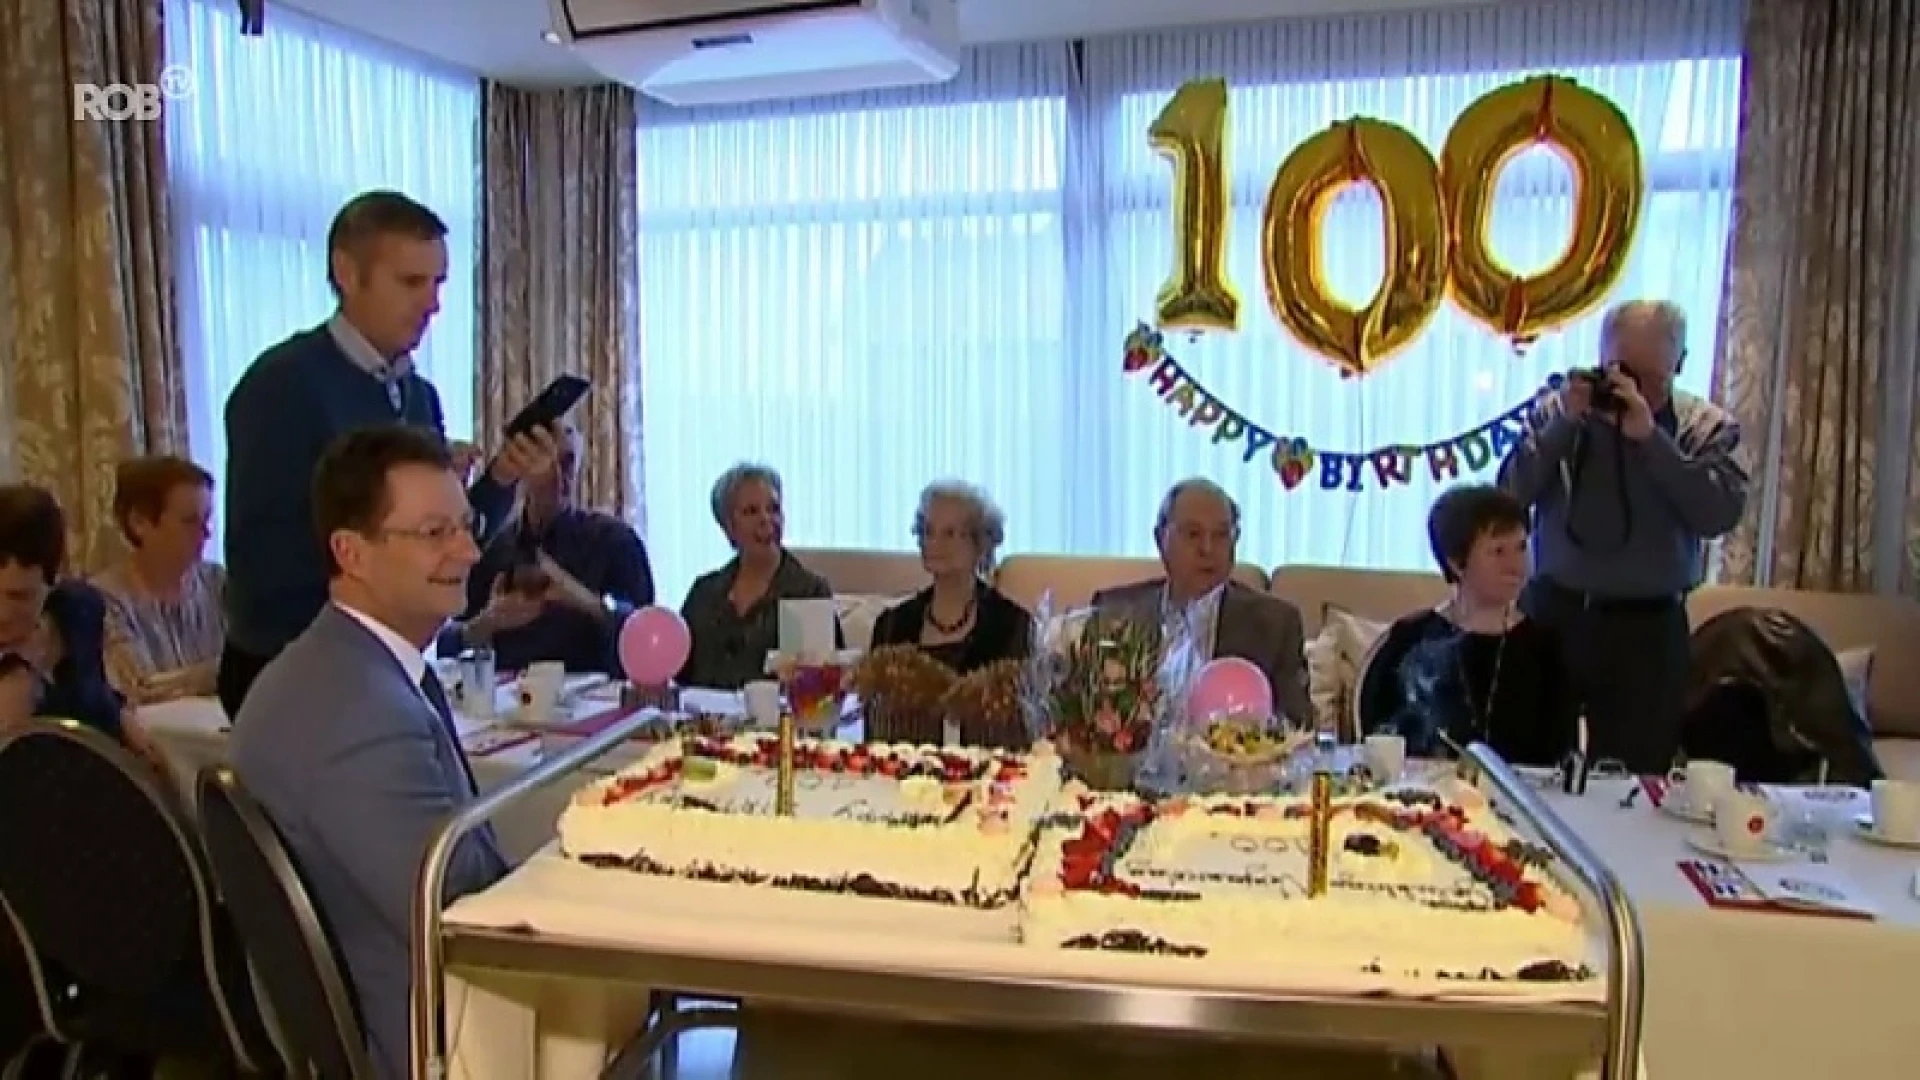 Neef en nicht worden 100 jaar in woon-zorgcentrum Populierenhof in Heverlee